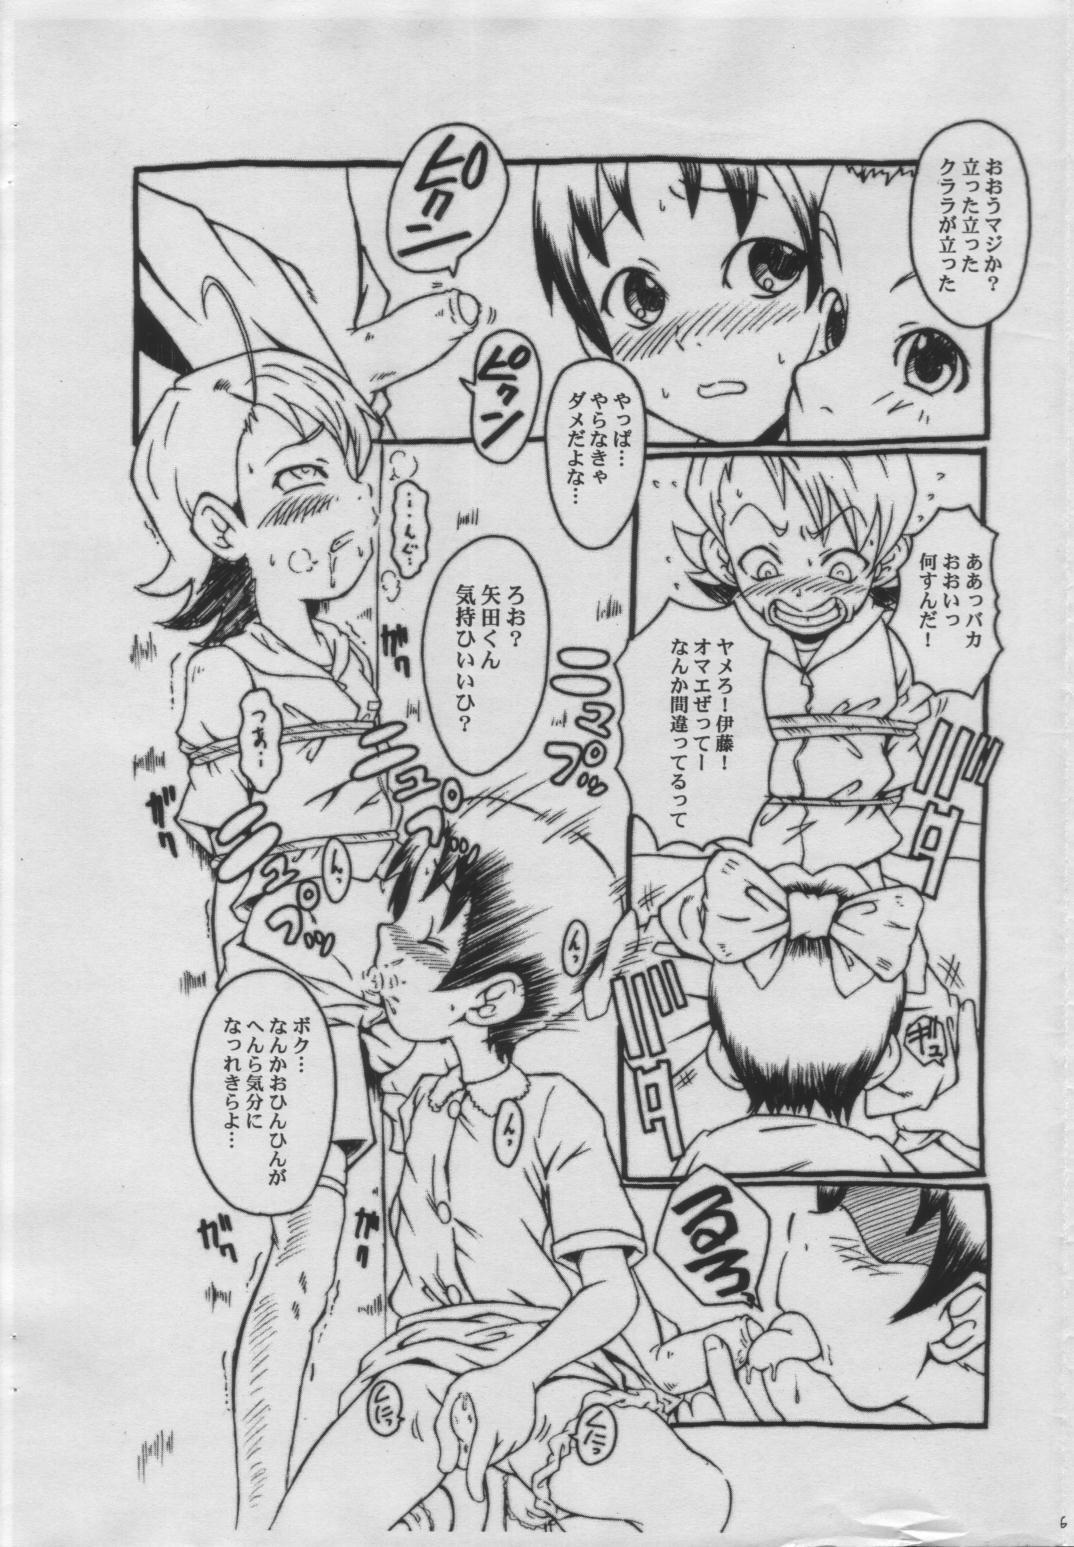 Cdmx WALZ Jiikokyun Tenraku URABAMBI Shota Collection 5-gou - Ojamajo doremi Vaginal - Page 5